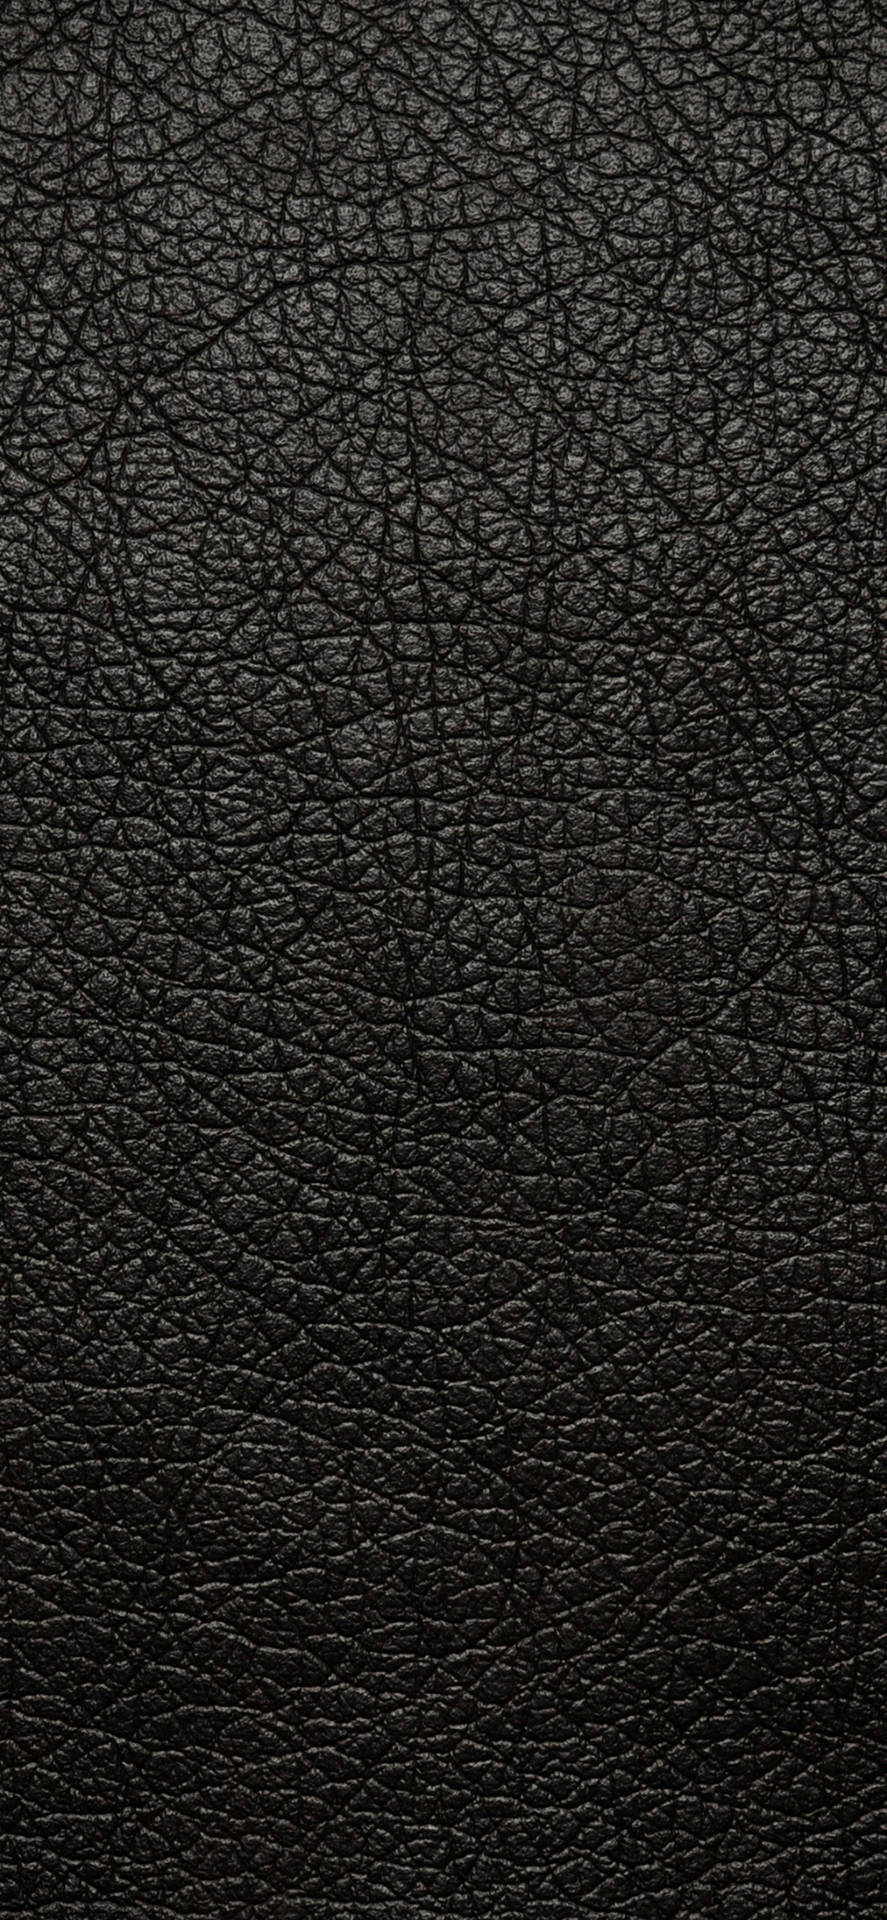 Sædekappe i sort læder iPhone Wallpaper